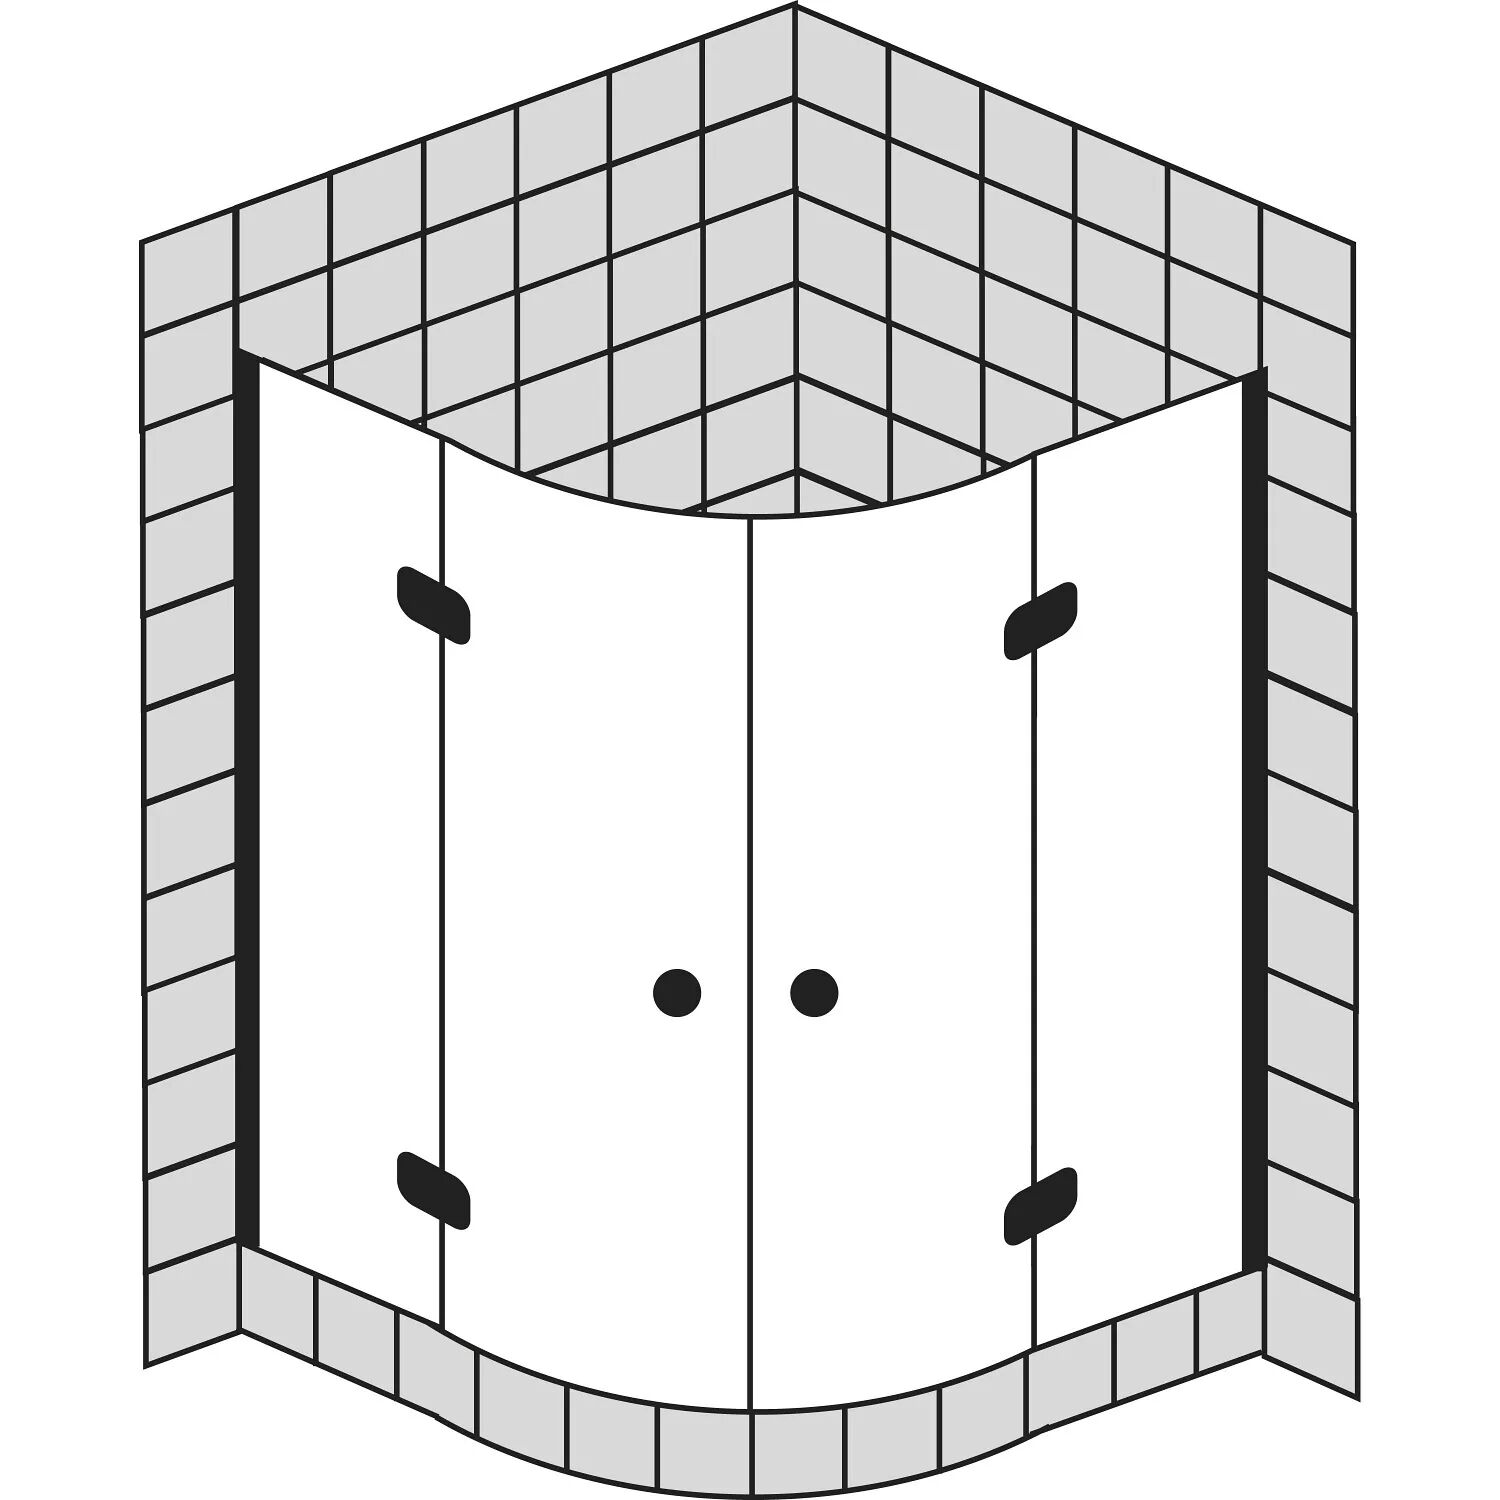 Sprinz BS-Dusche Runddusche mit 2 Türen 100 x 100 x 200 cm, Radius 52 cm BS-Dusche B: 100 T: 100 H: 200 R: 52 cm chrom/ silber hochglanzpoliert